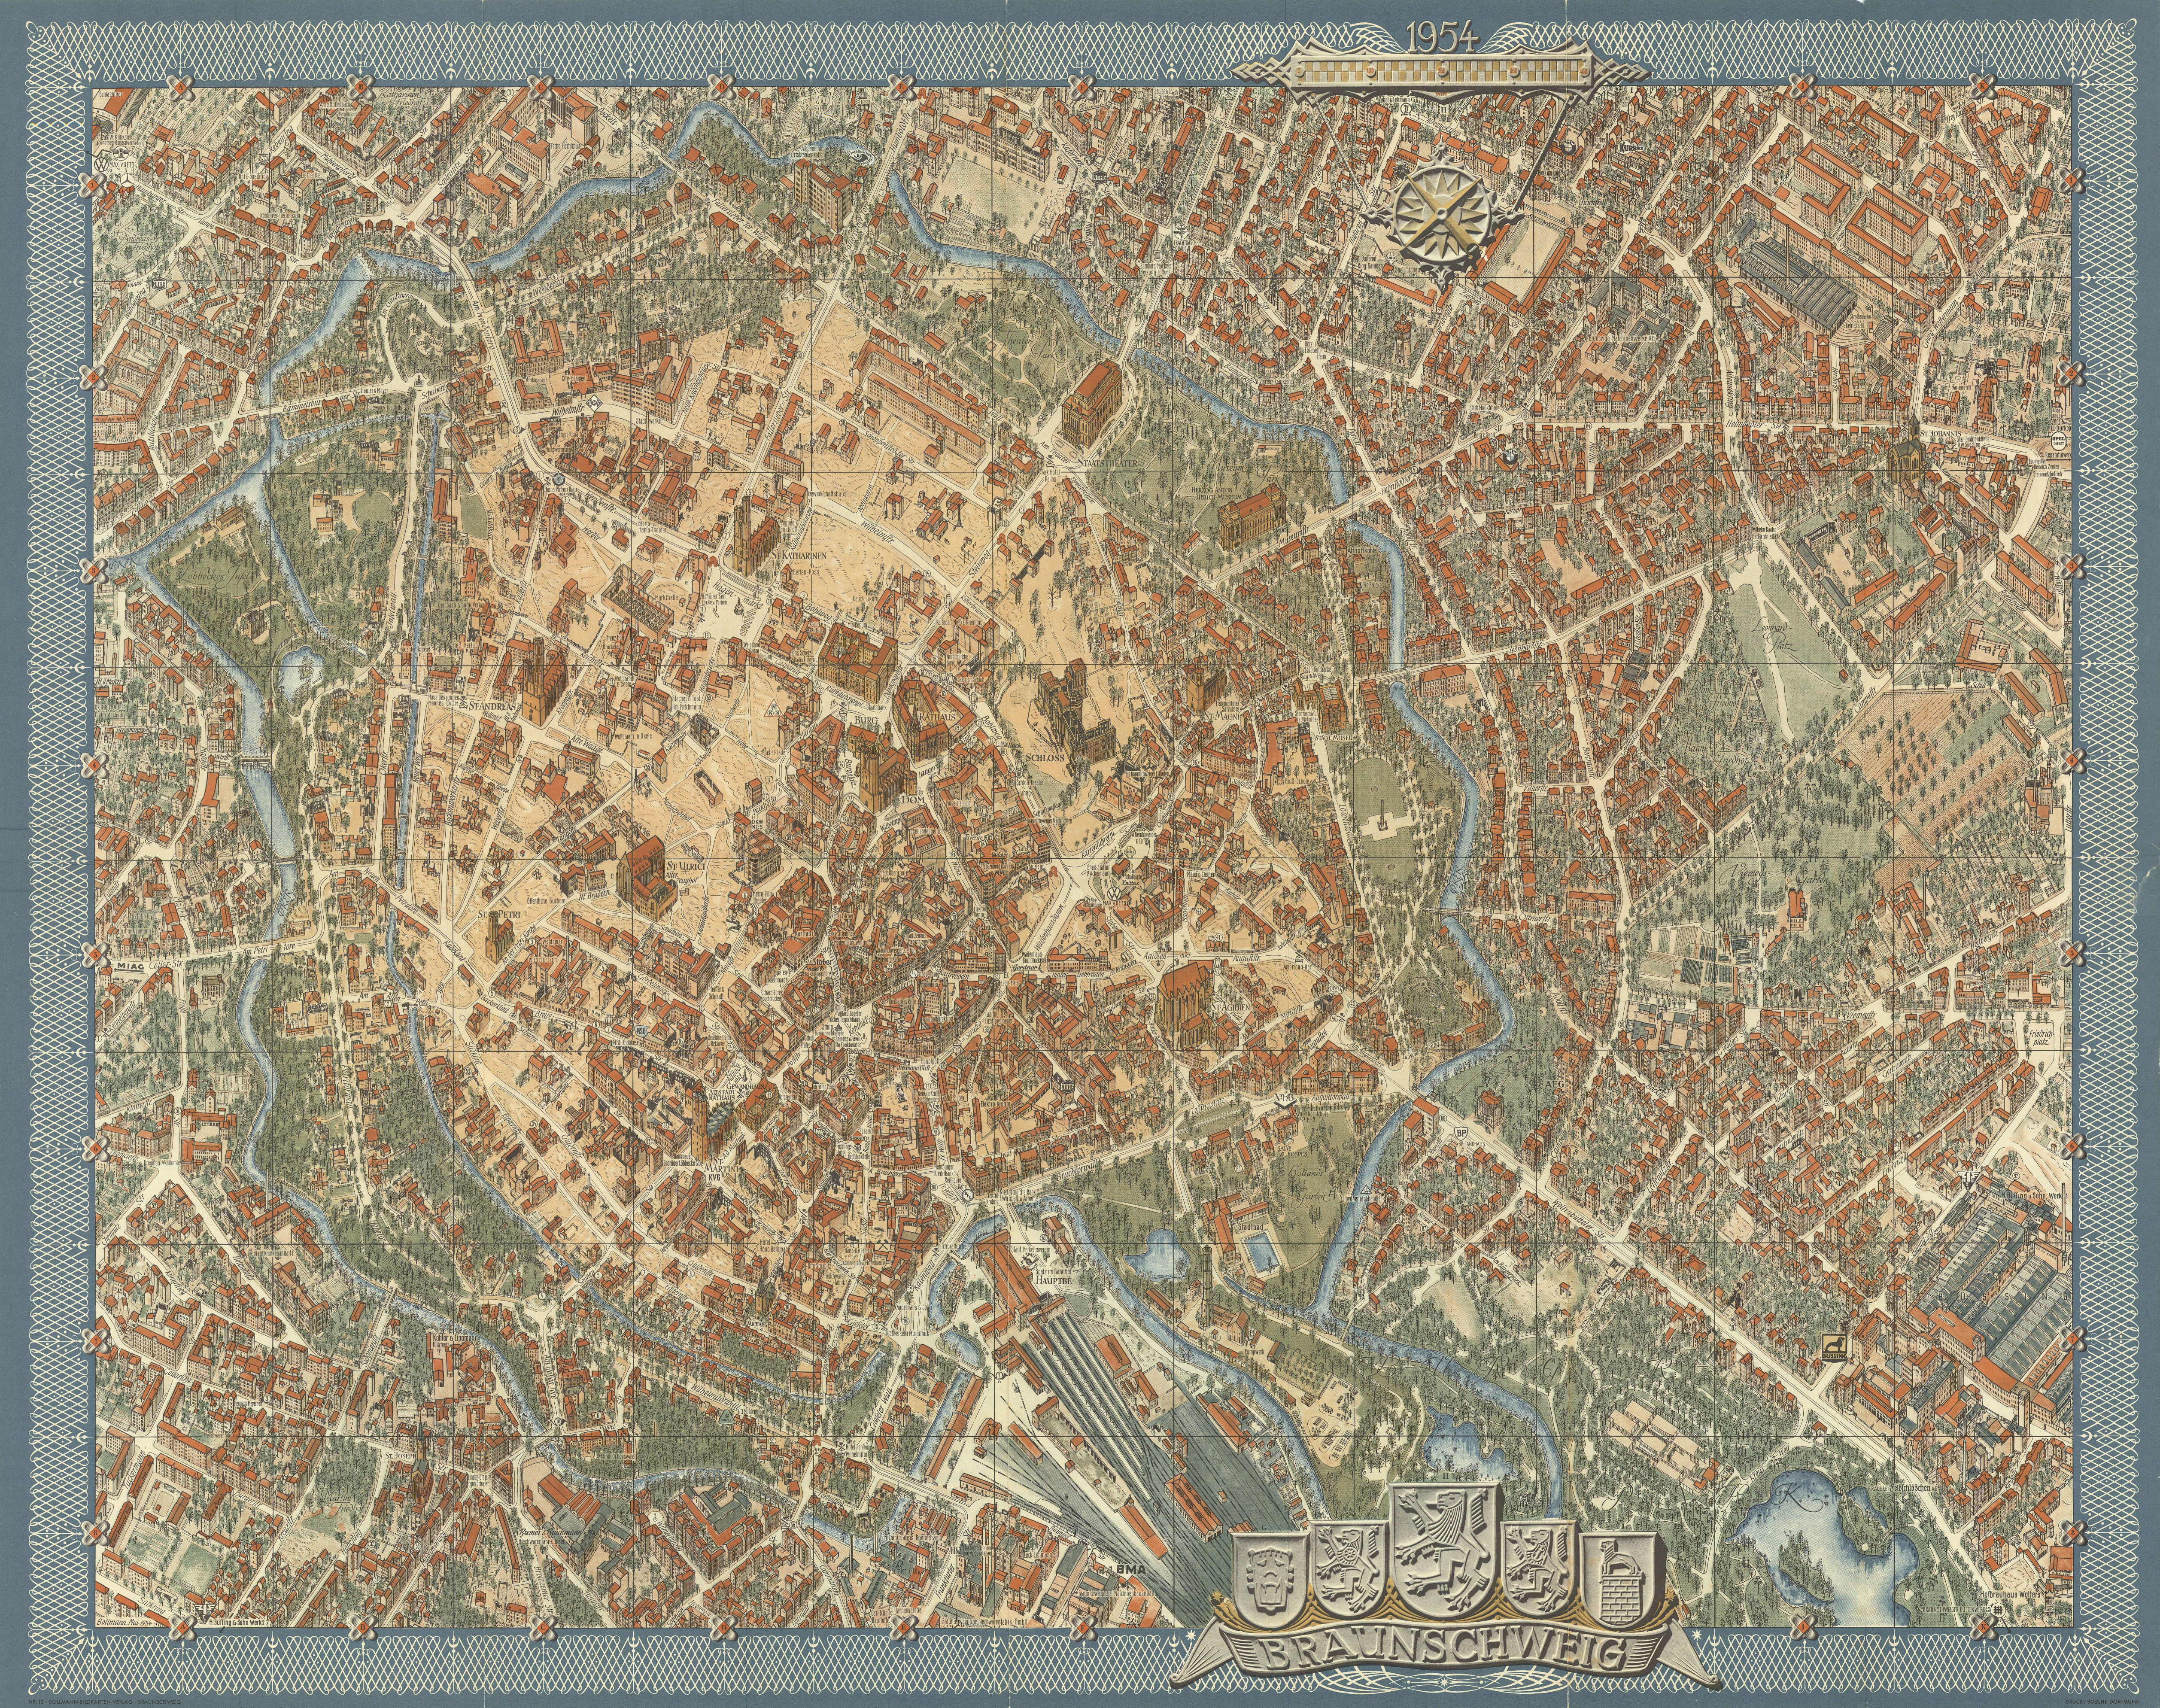 Braunschweig [Brunswick] pictorial bird's eye view city plan. BOLLMANN 1954 map